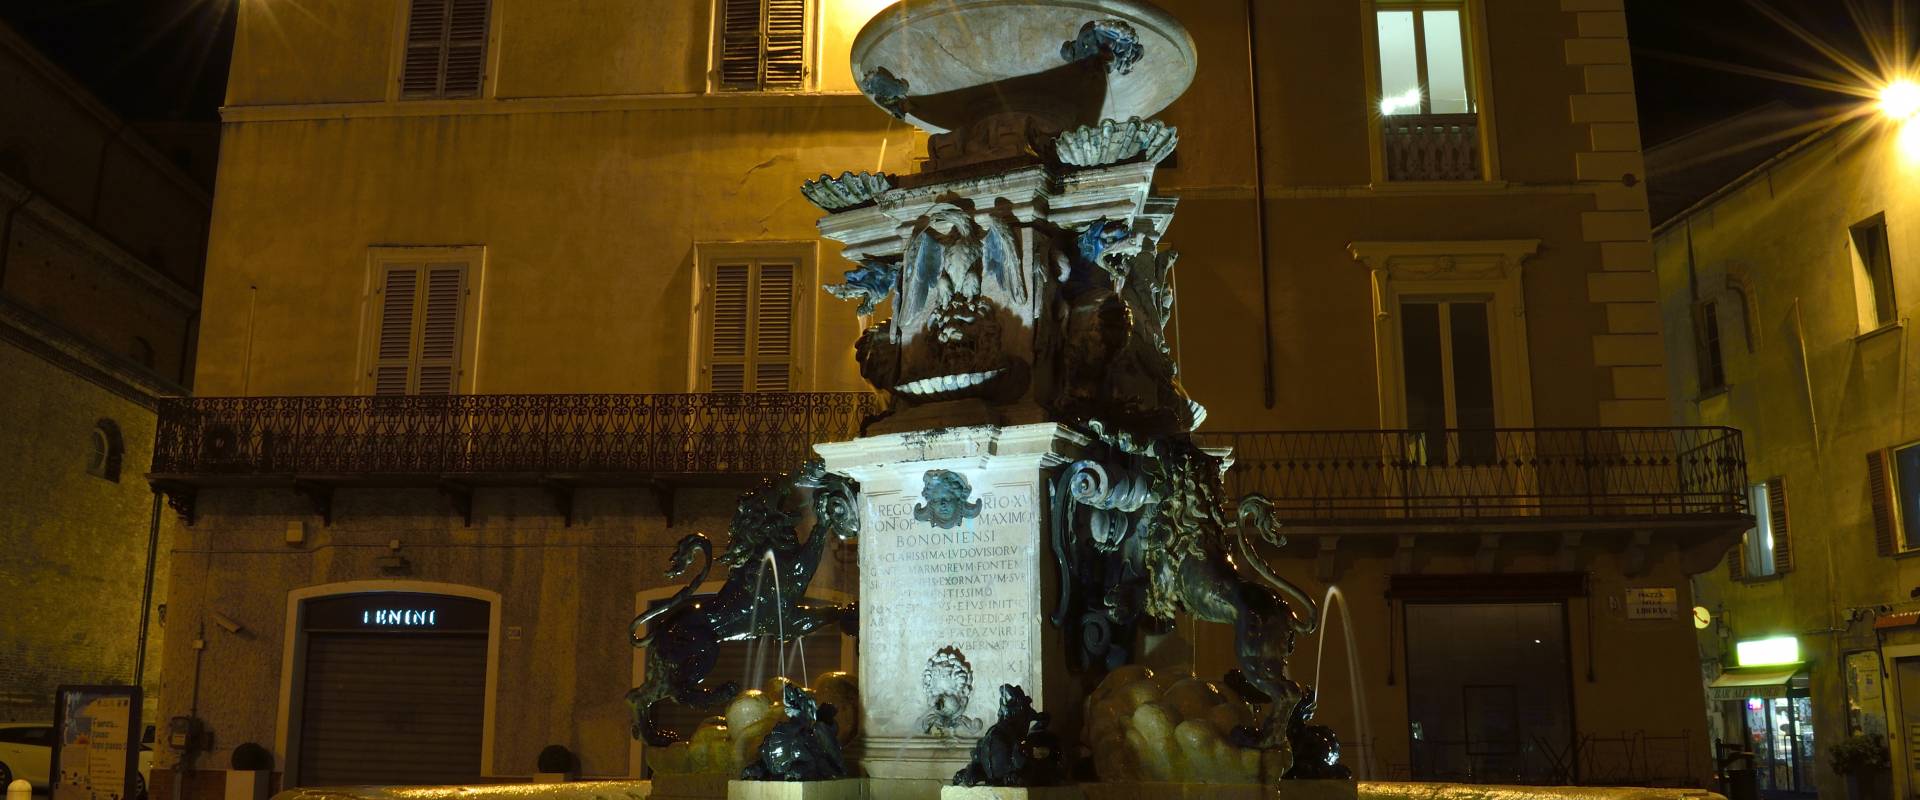 Fontana monumentale DSC0988afredda 404 foto di Sancio1979